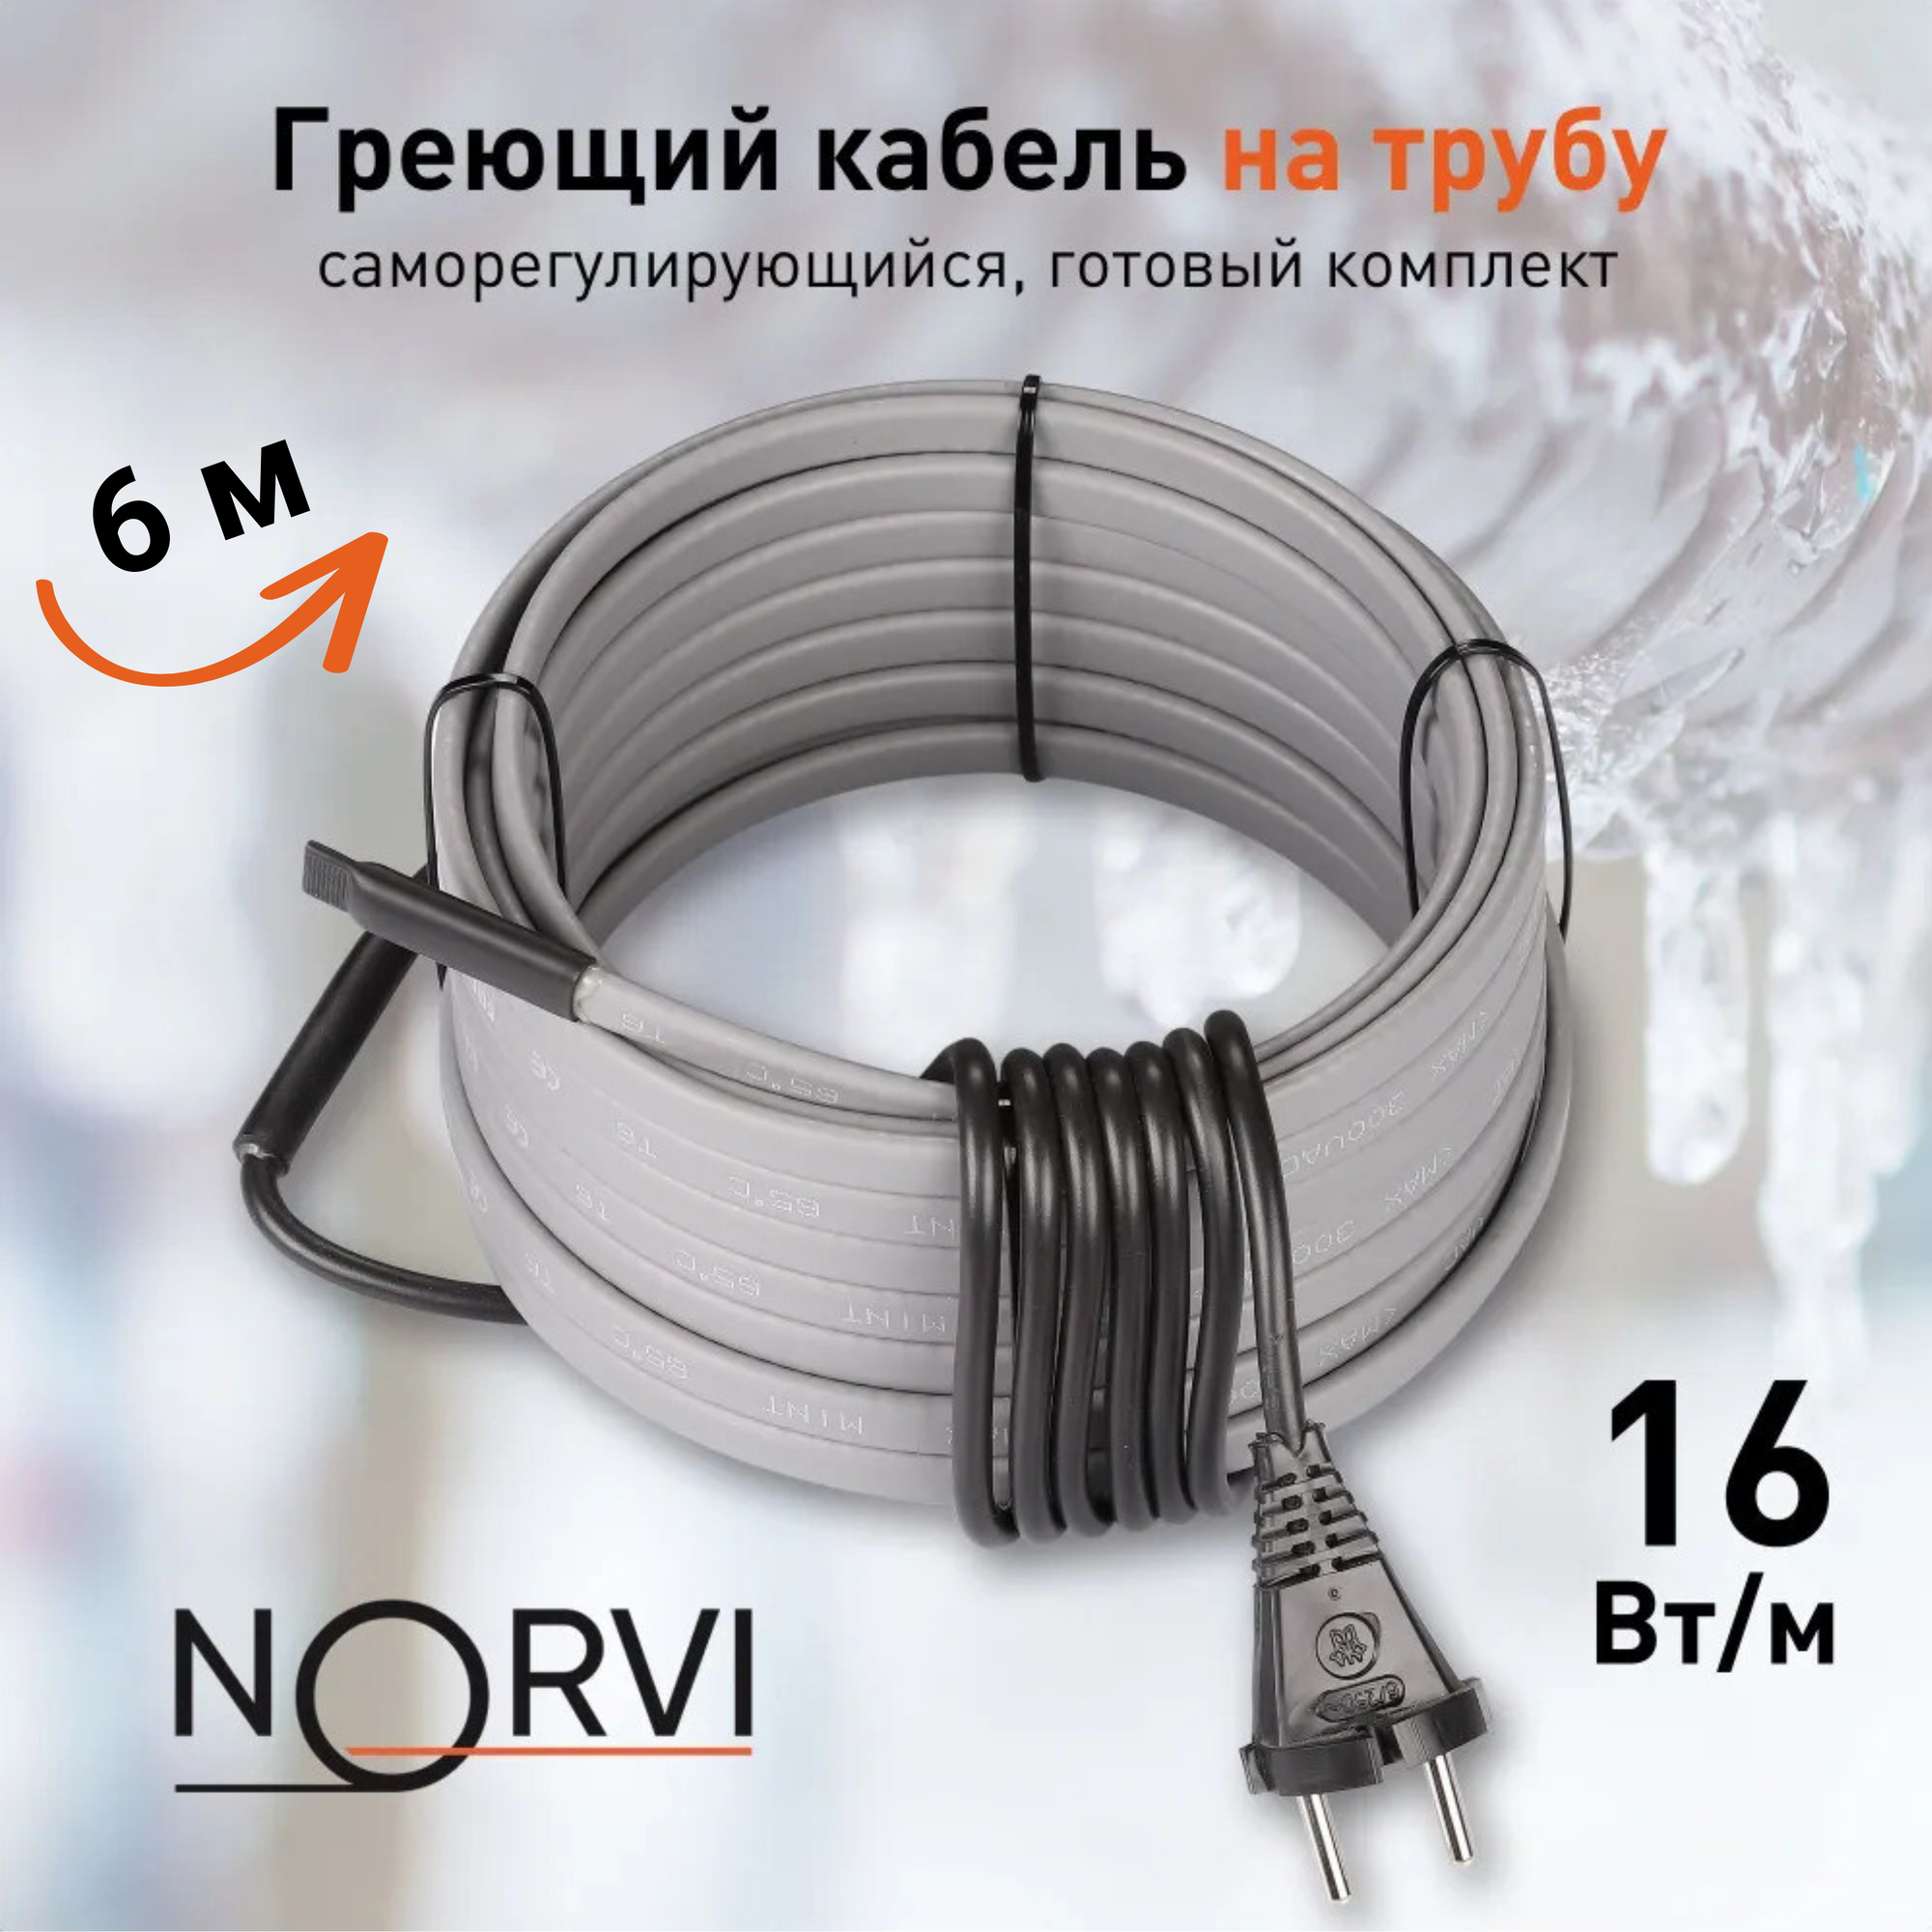 Греющий кабель NORVI ONPIPE, 96 Вт, 6 м, для обогрева труб снаружи